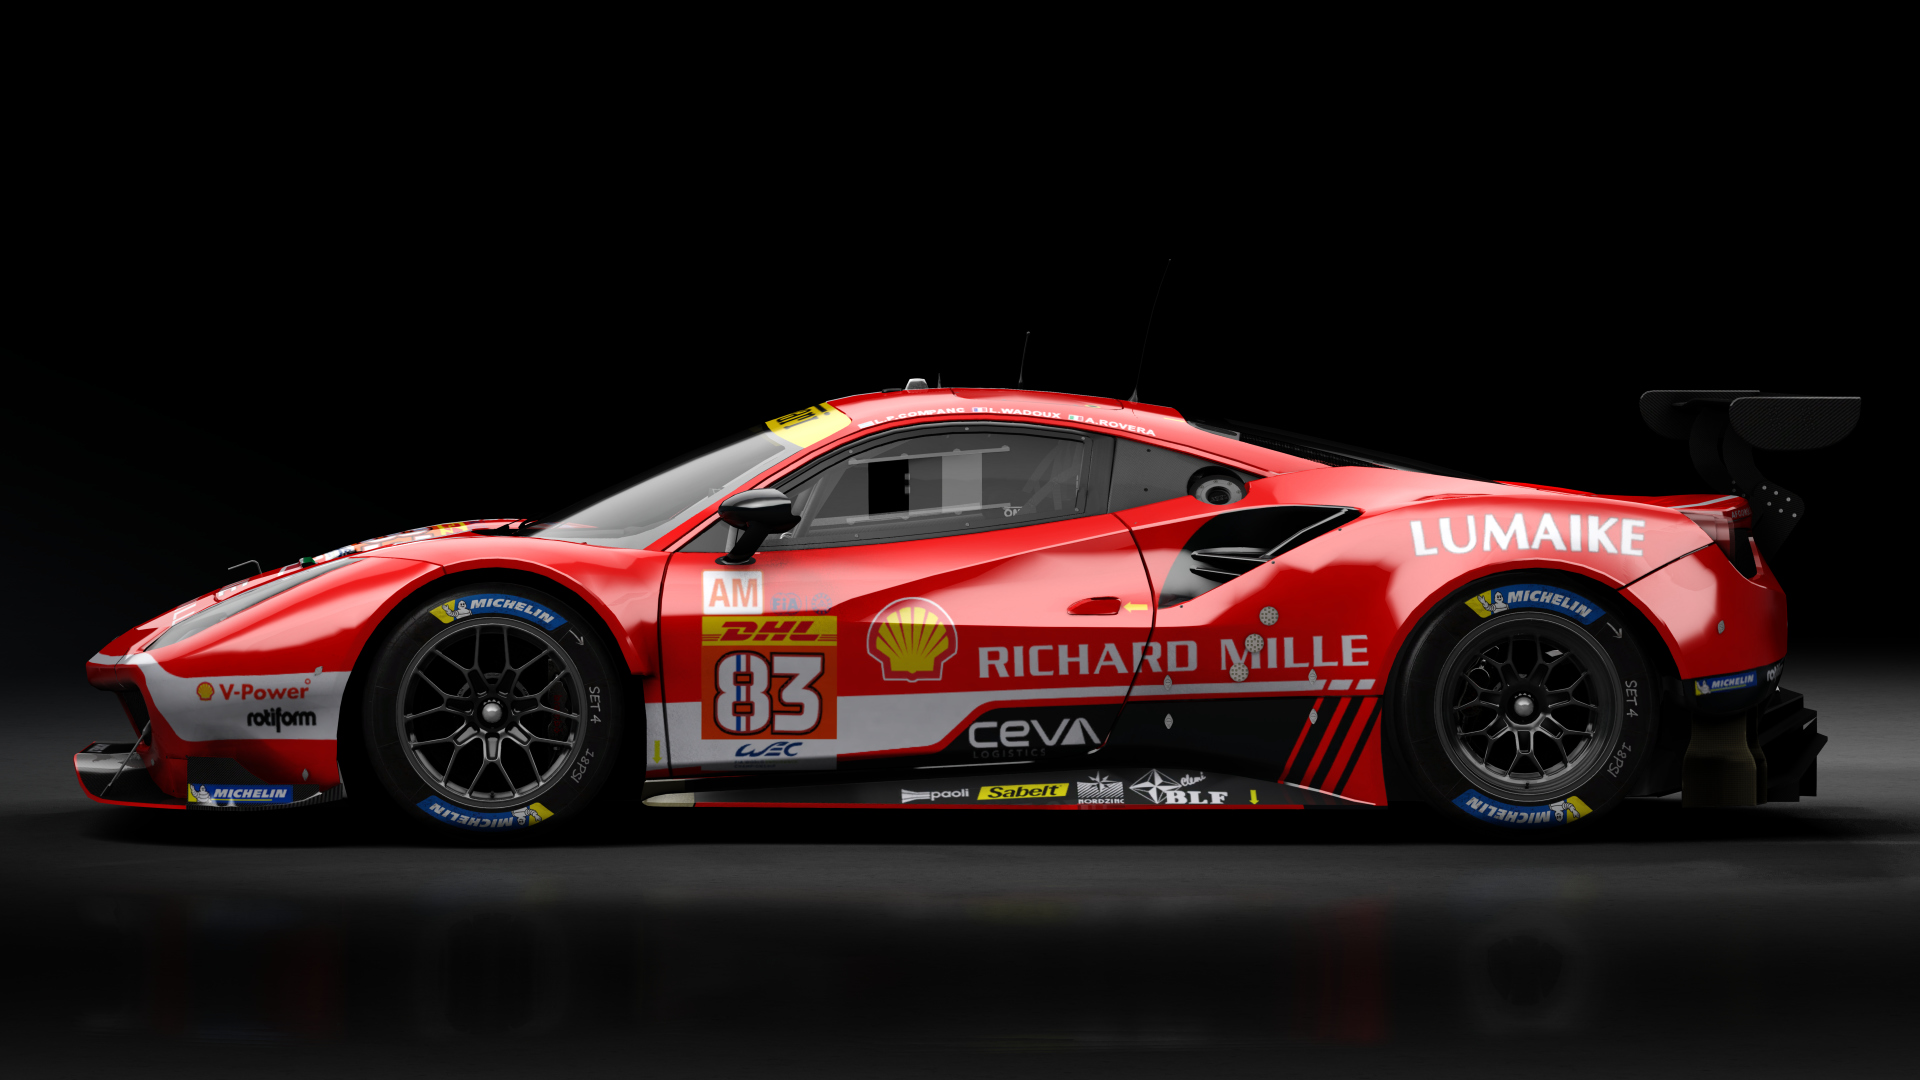 2018 Ferrari 488 GTE Evo [Michelotto], skin 2023 #83 Richard Mille WEC Rd5 Monza